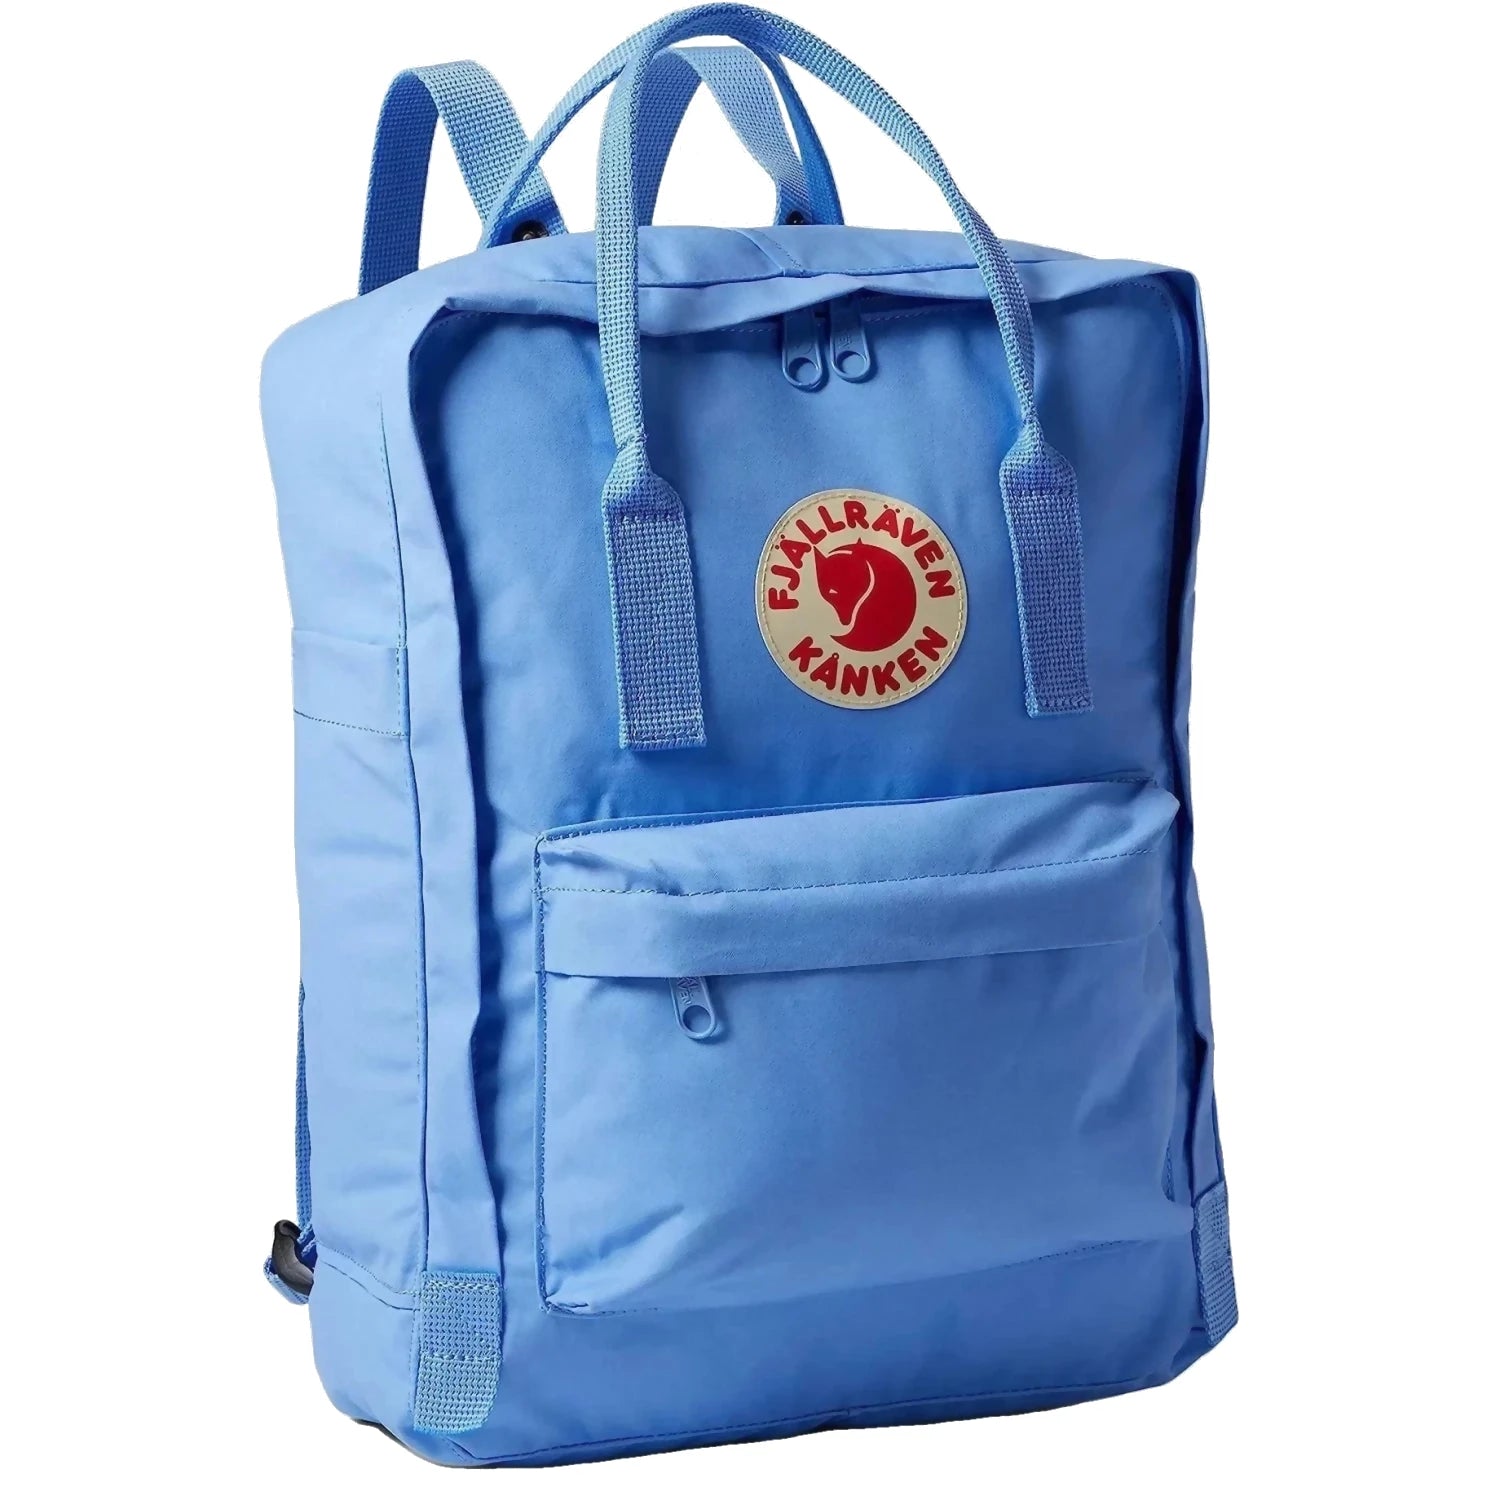 Fjallraven Kanken Backpack, ultramarie  color, front view.